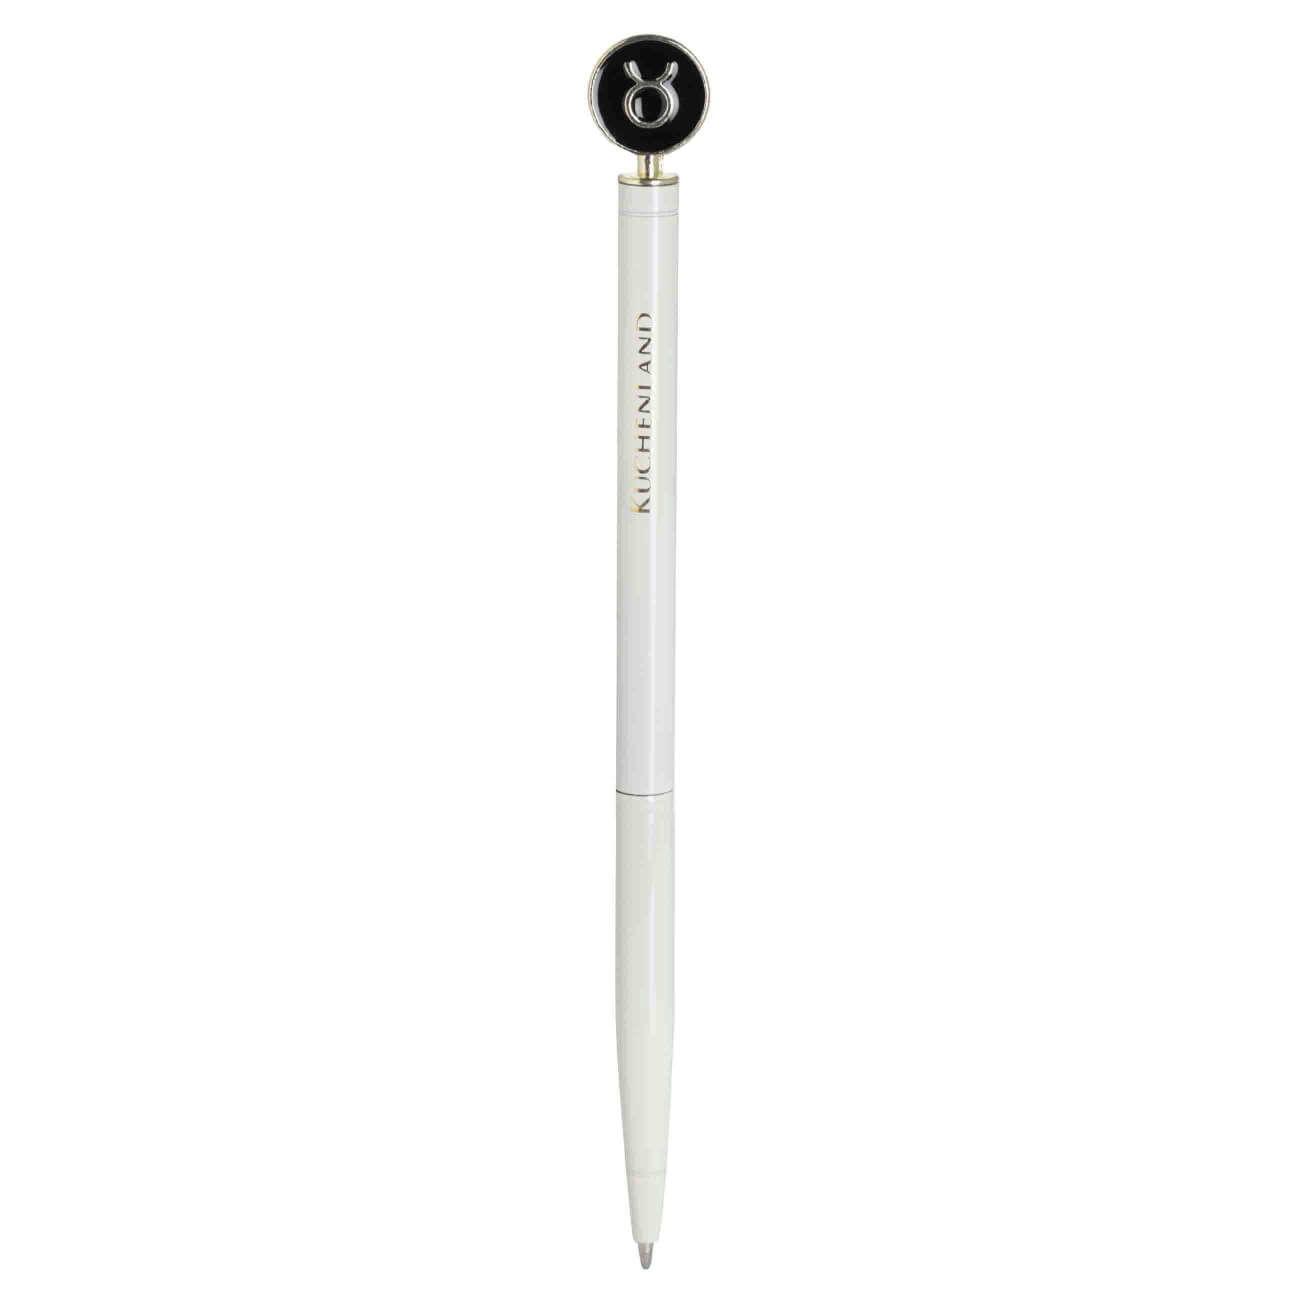 Ручка шариковая, 15 см, с фигуркой, сталь, молочно-золотистая, Телец, Zodiac грабли длина 25 см деревянная ручка